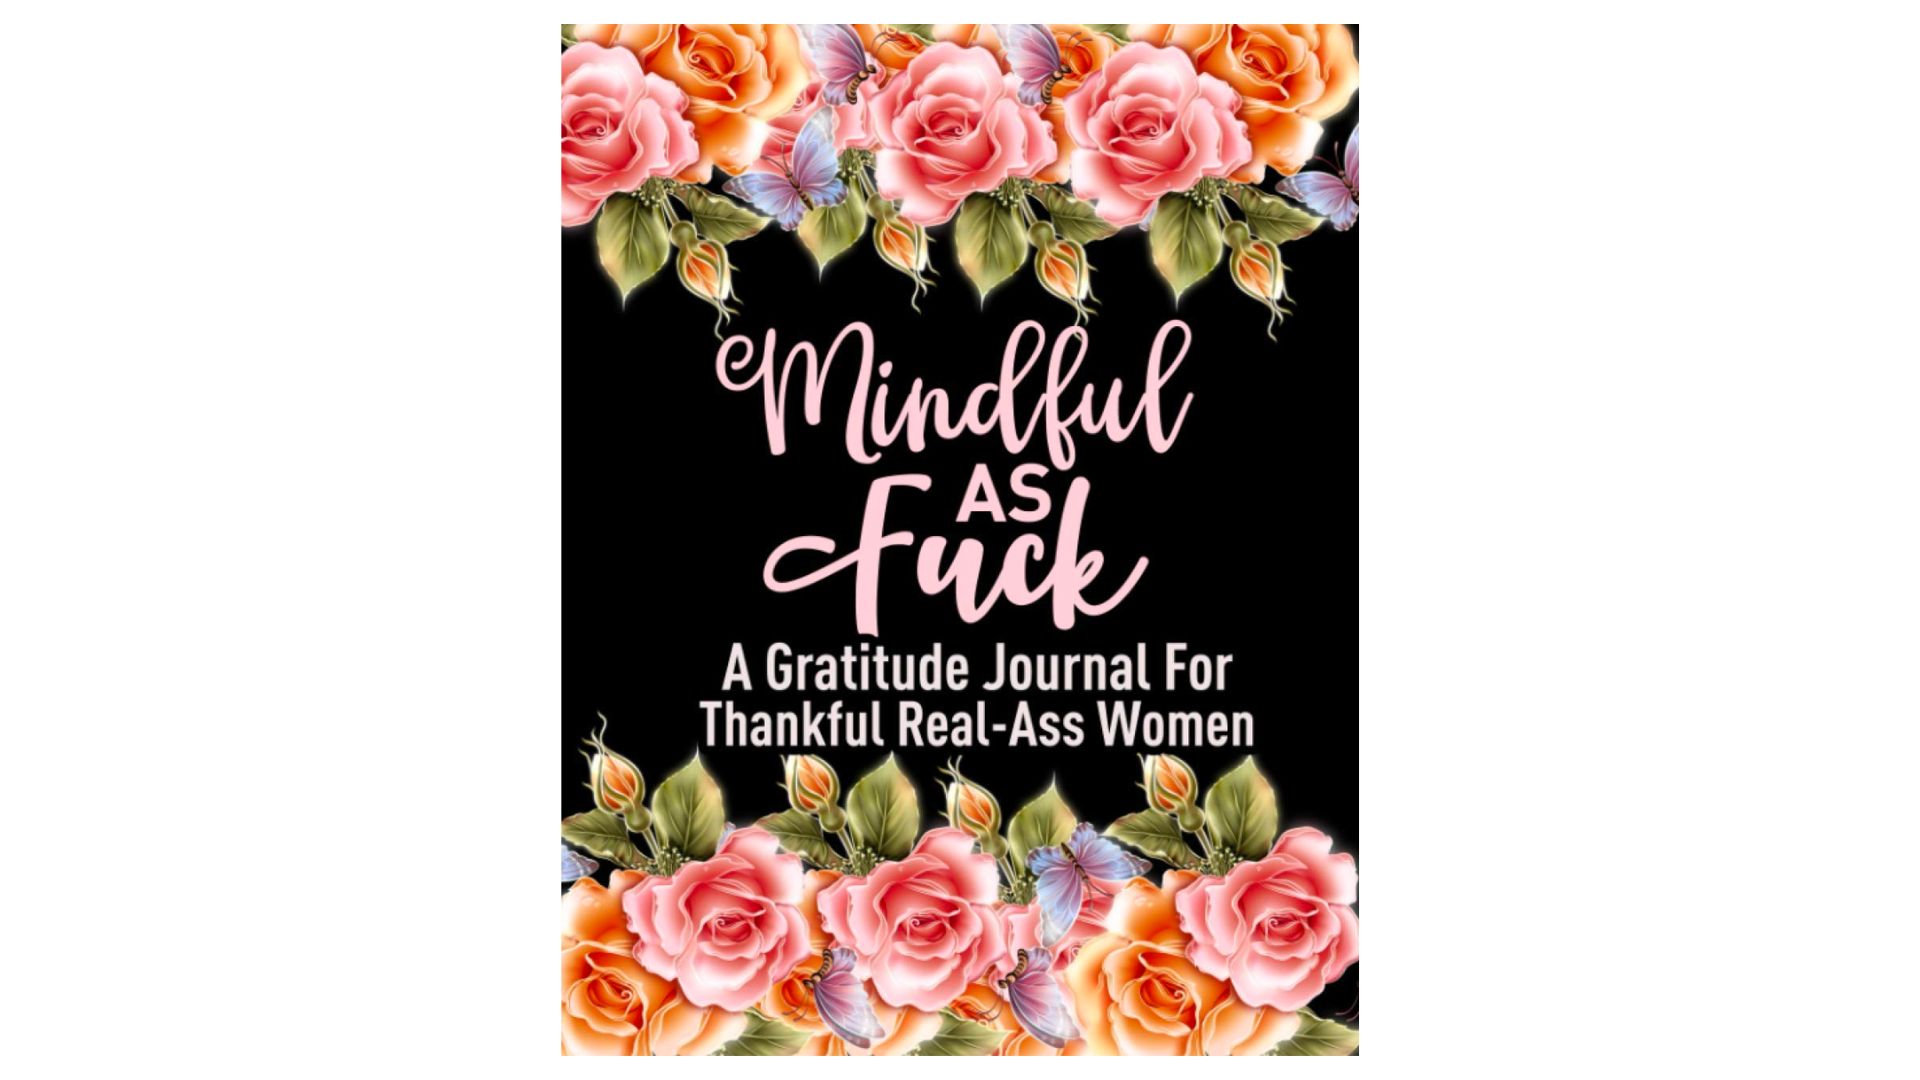 Gratitude journals